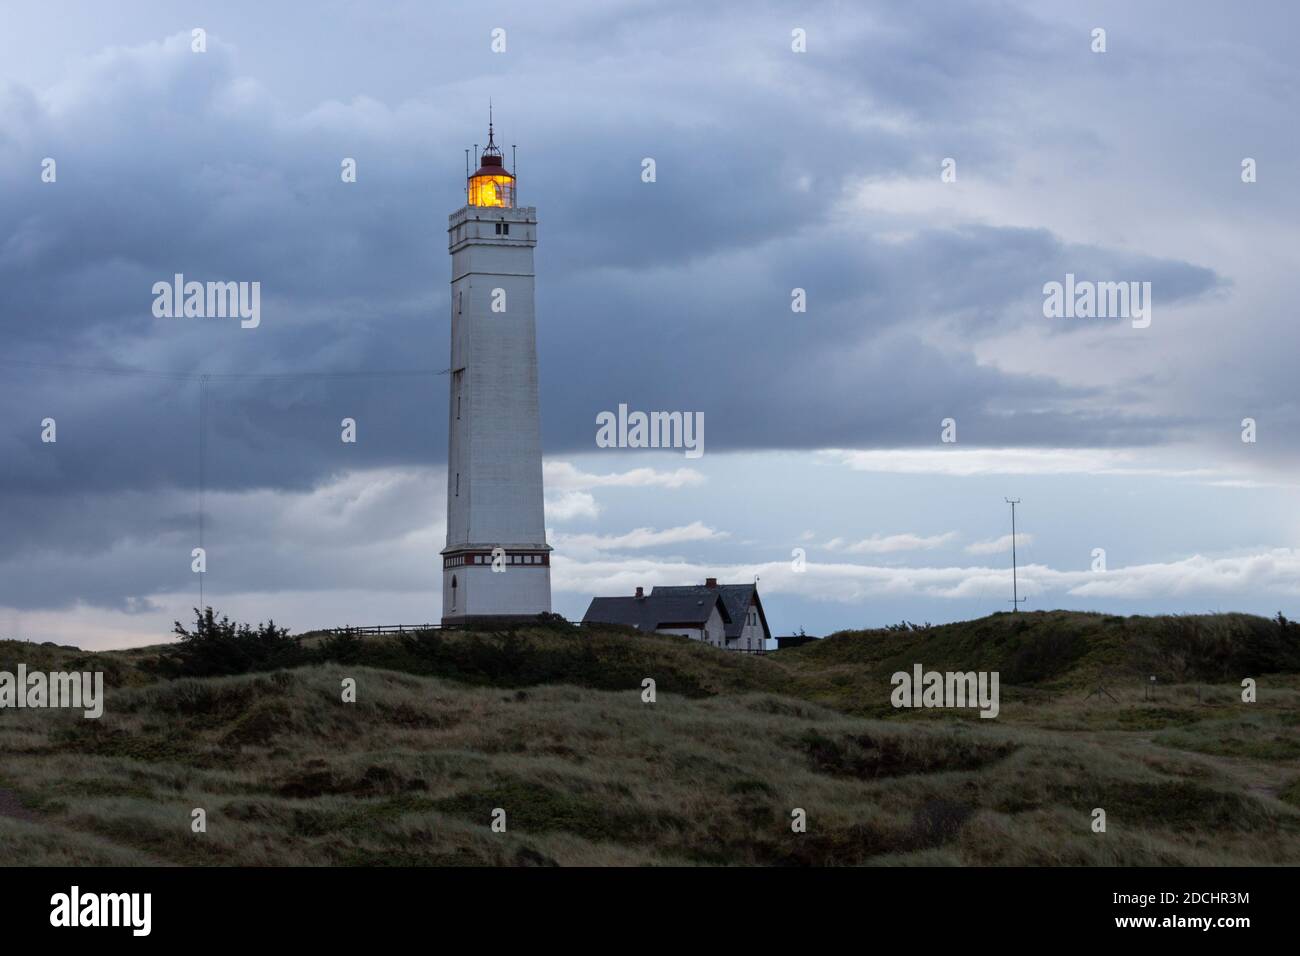 Drammatiche nuvole all'alba al faro di Blavand in Danimarca Foto Stock